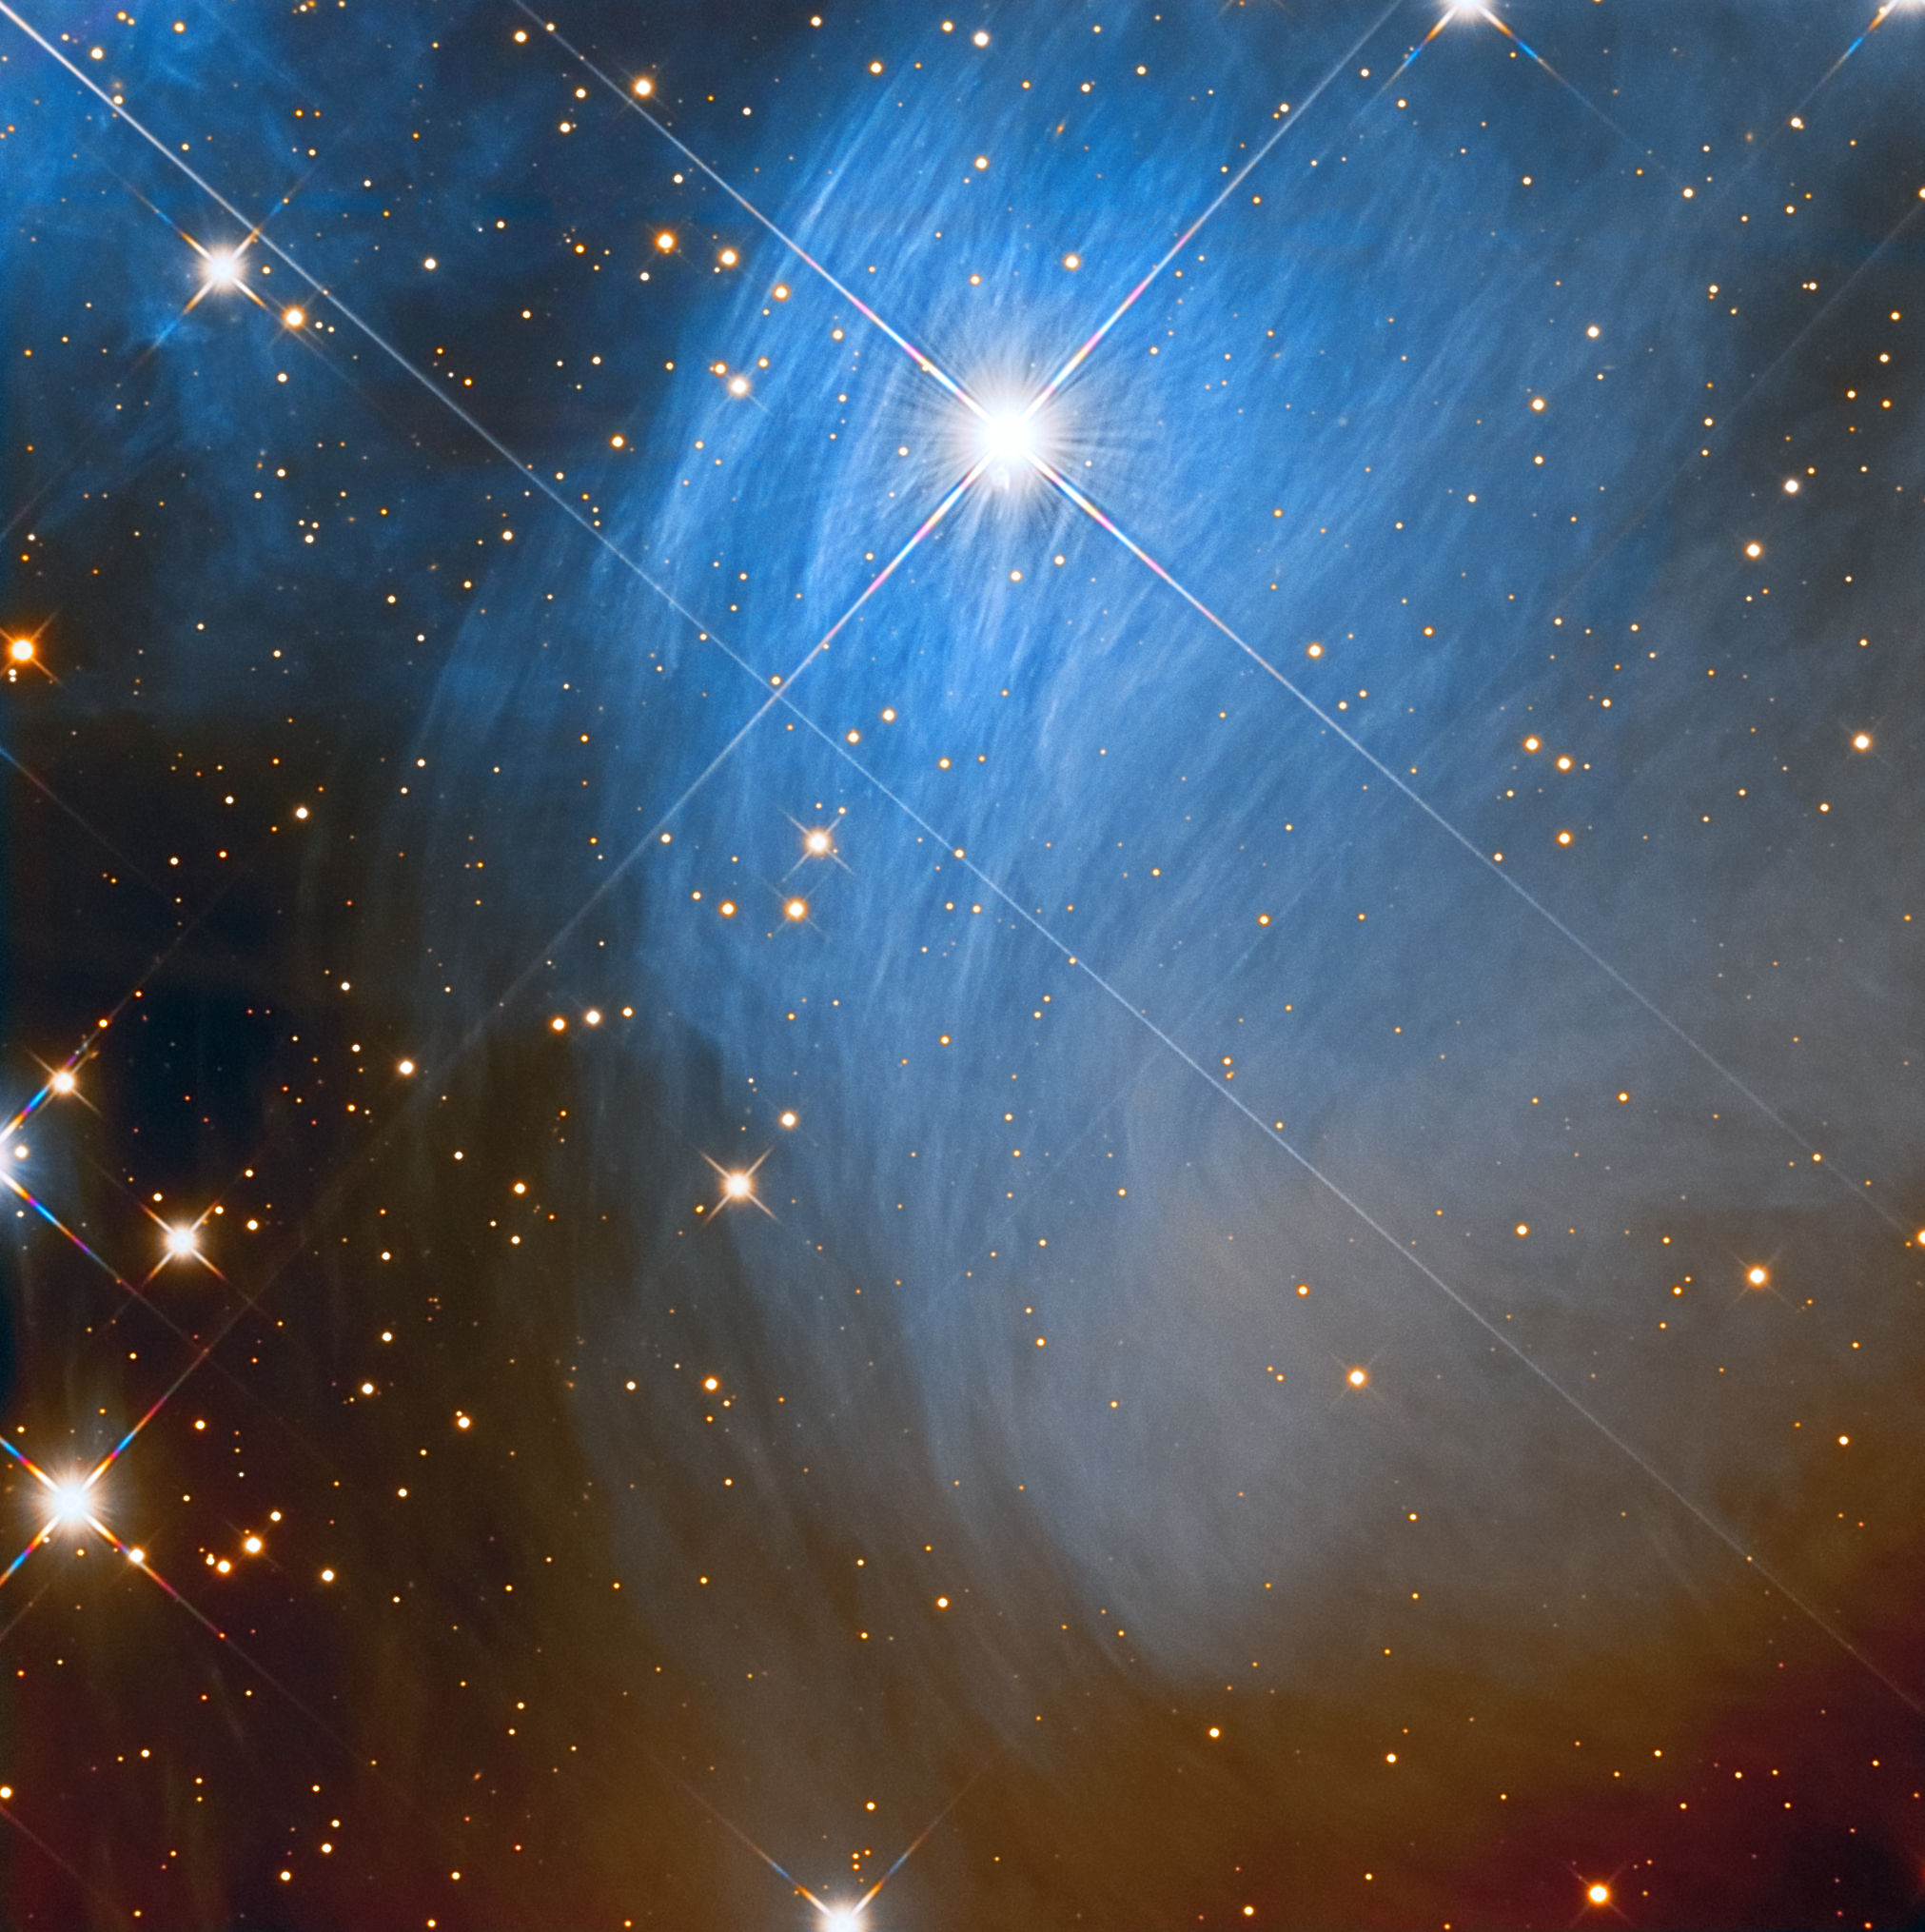 Meropes Reflection Nebula